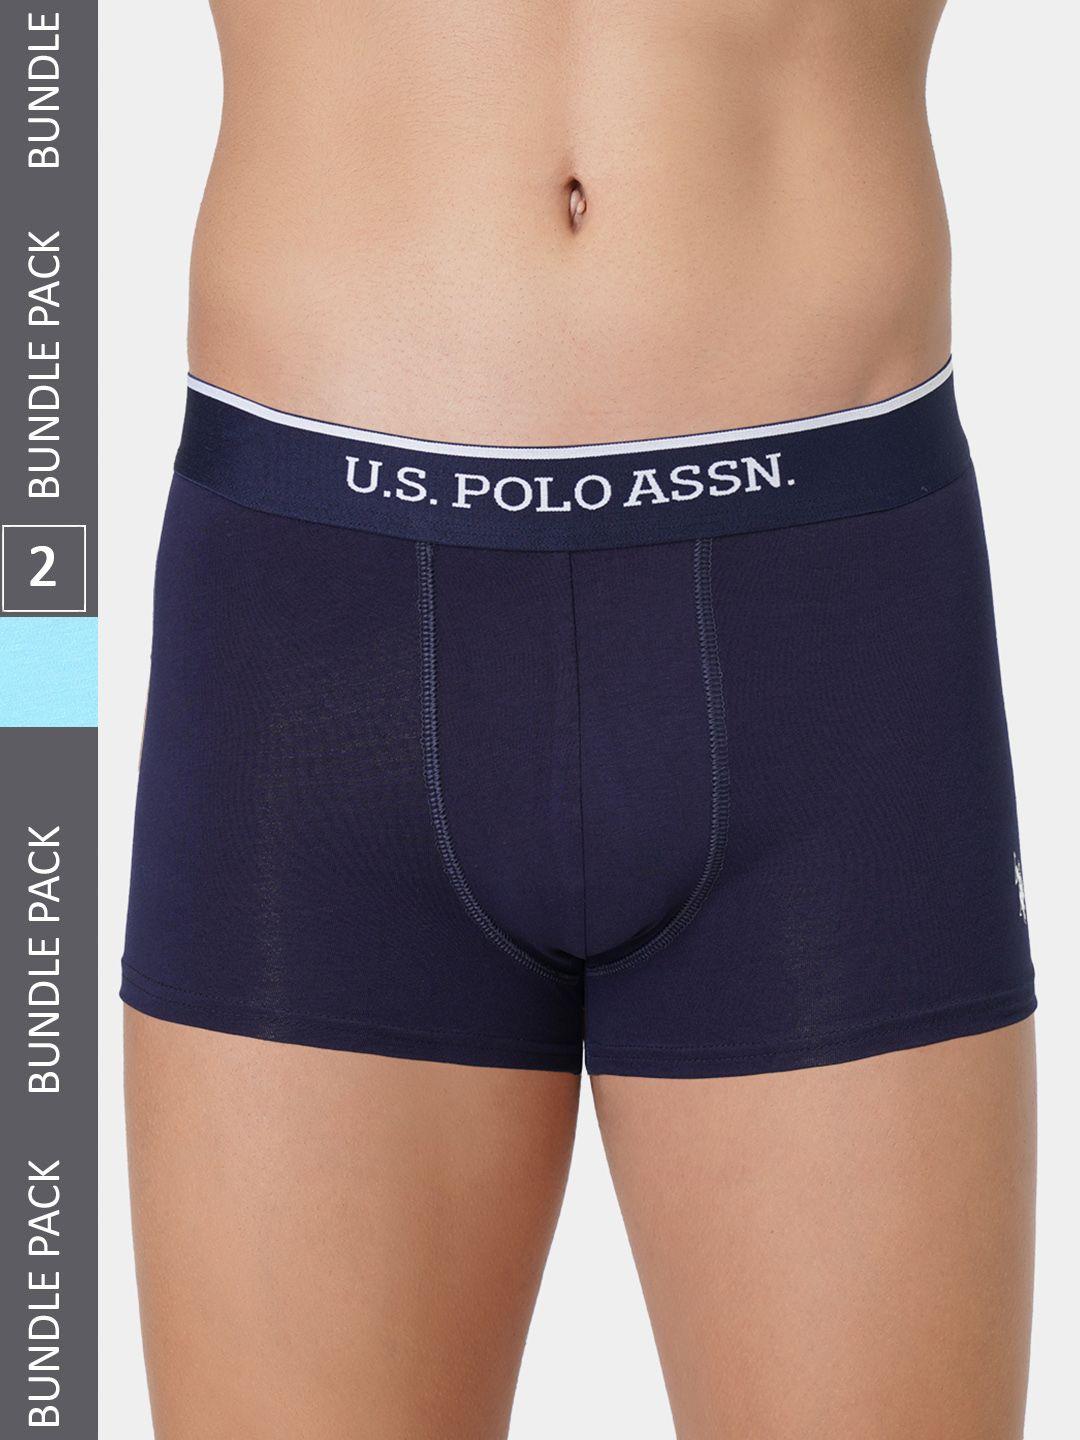 u.s.-polo-assn.-men-pack-of-2-brand-logo-printed-detail-trunks-et004-nb1-p2